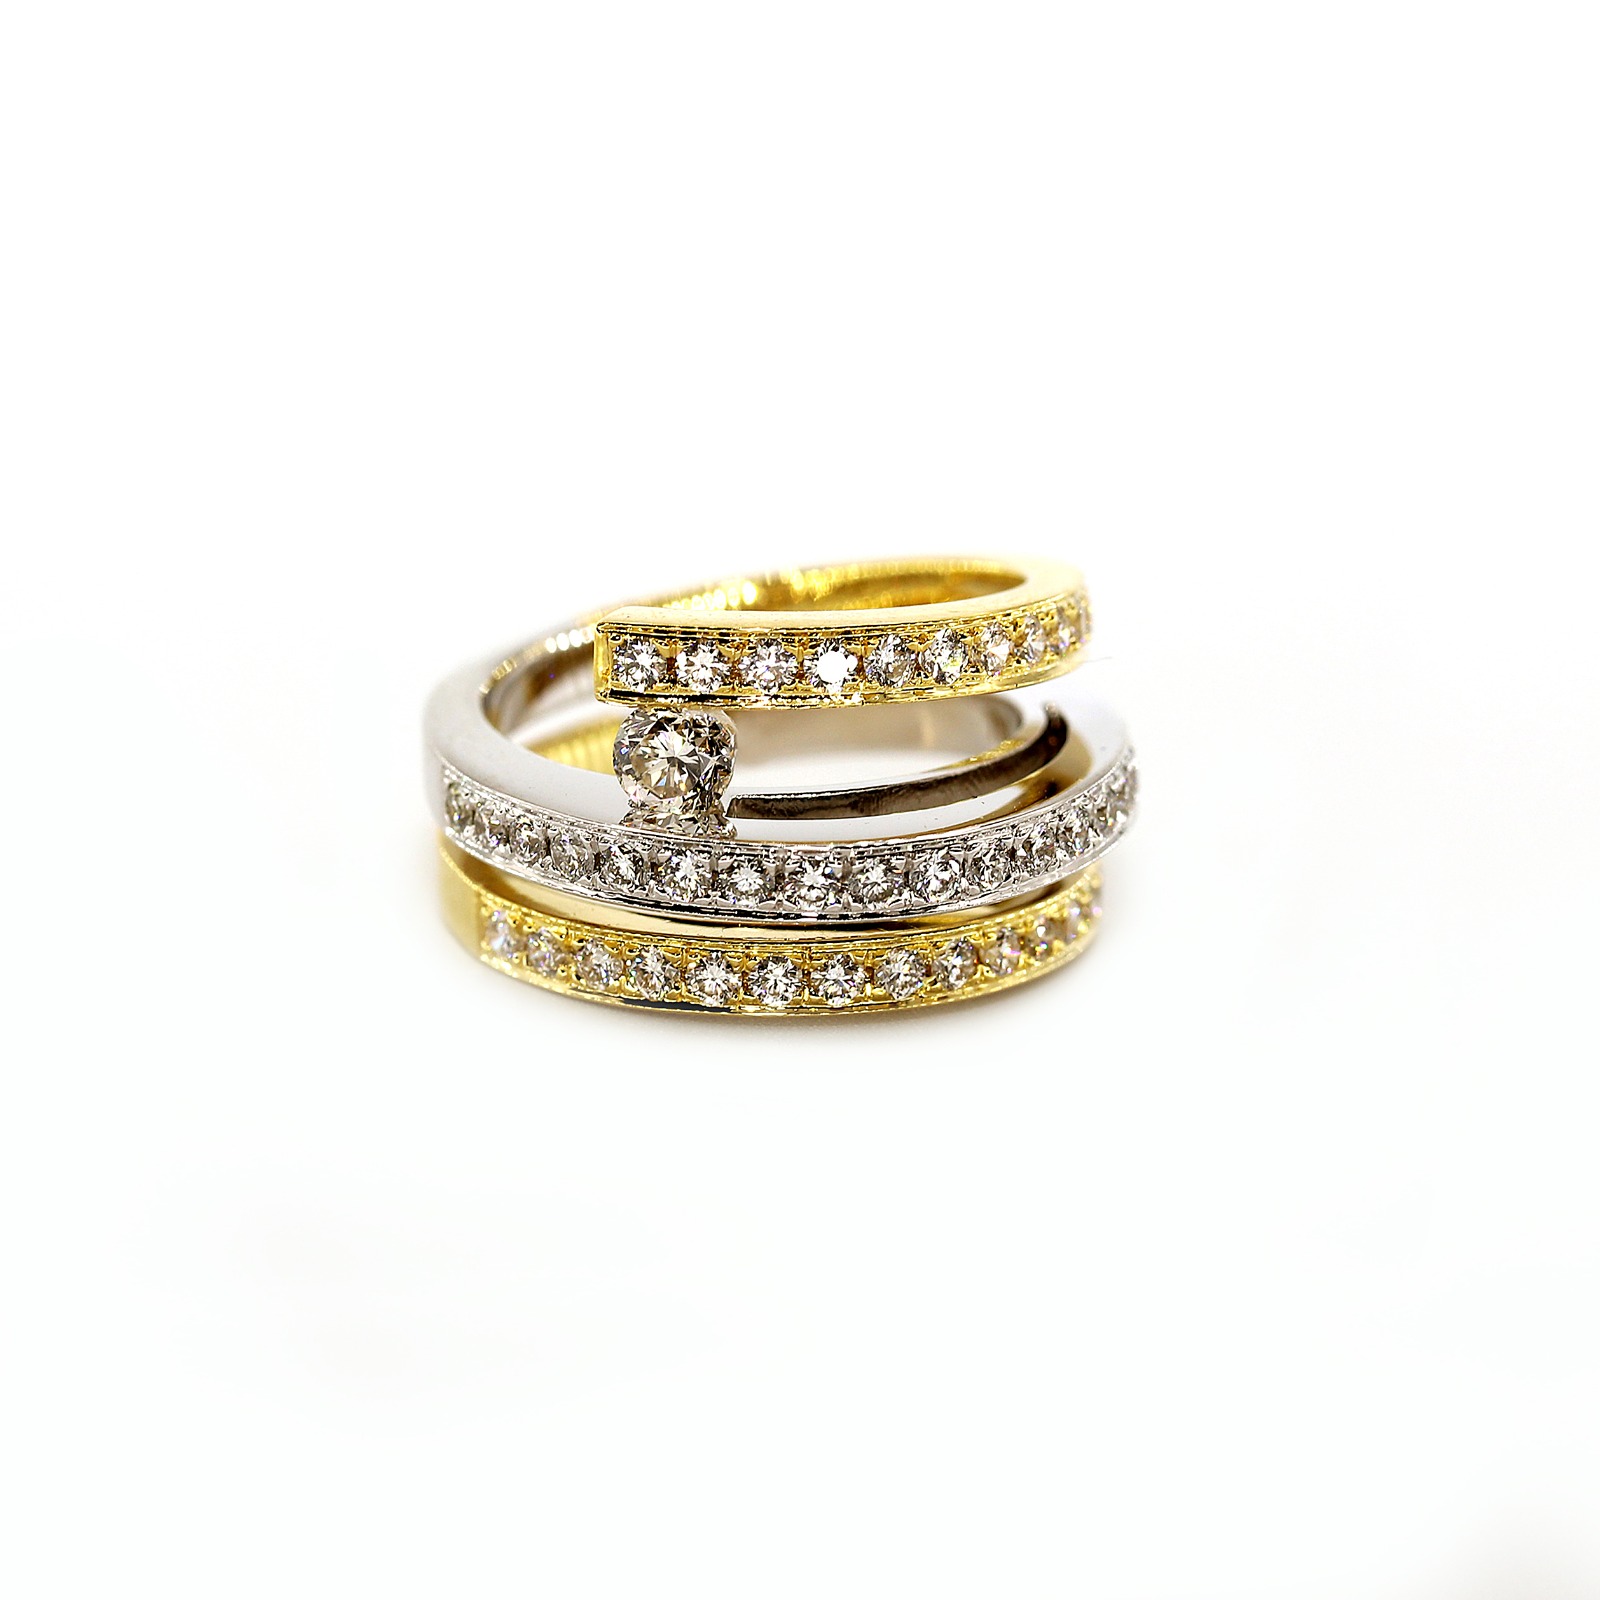 Специально разработанное женское кольцо из 18-каратного белого золота с бриллиантами — ежедневное предложение от GoldenEyeJewellery.net